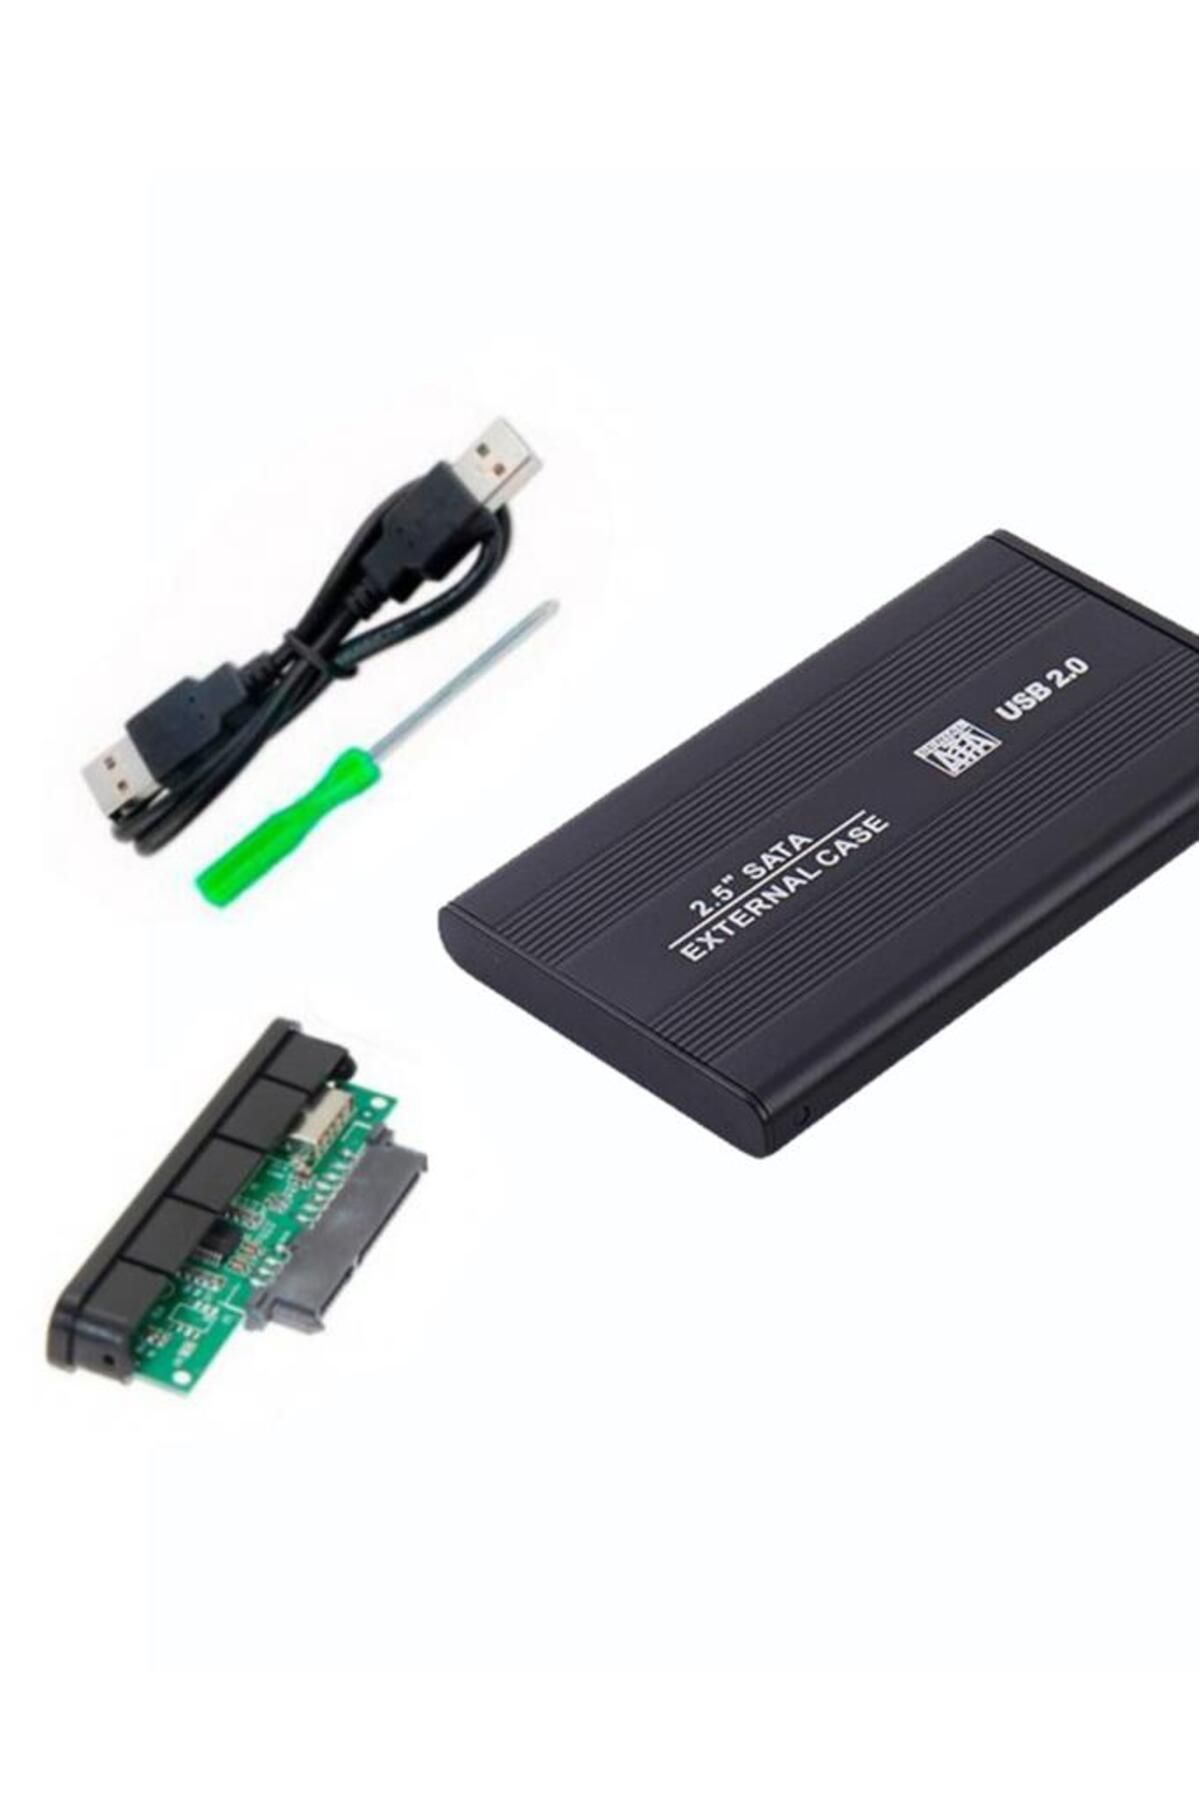 2,5 SATA External Case Harddisk Kutusu USB 2.0 Gümüş Renk